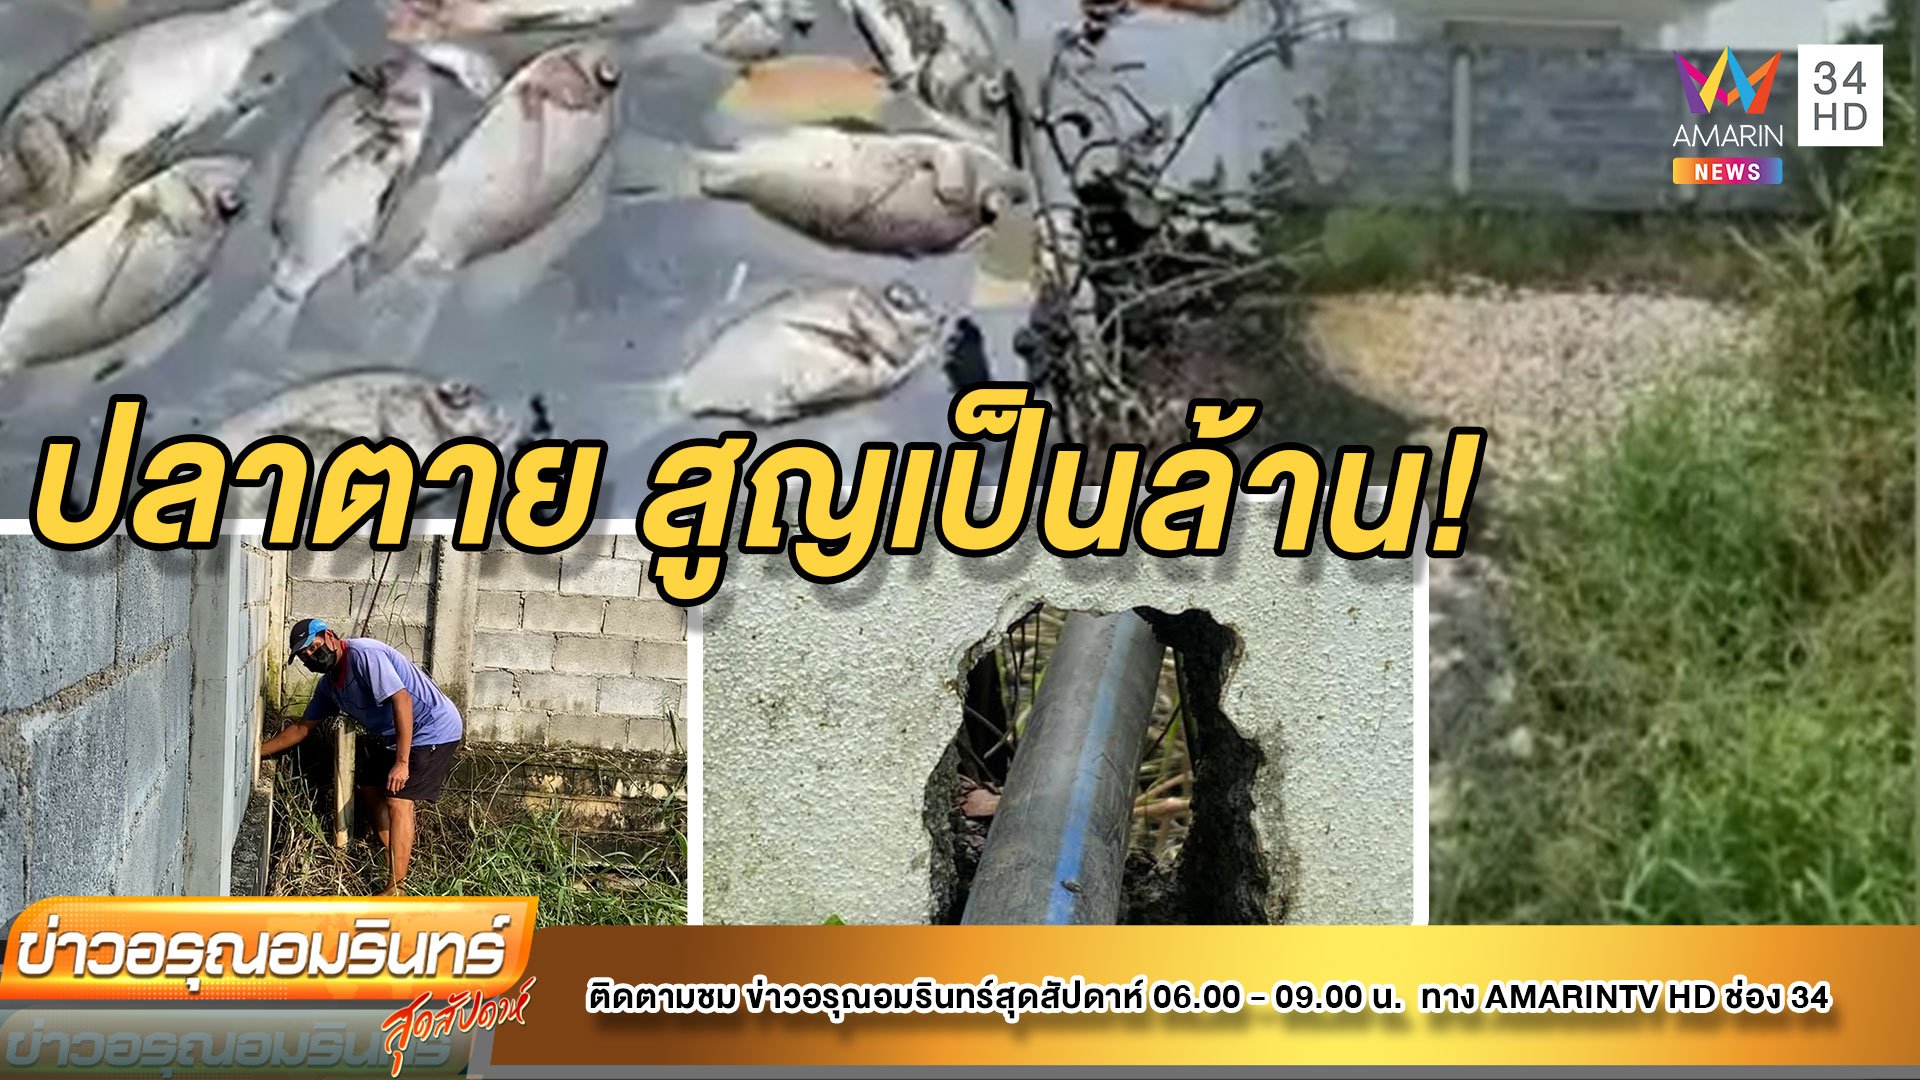 โวยหมู่บ้านหรูปล่อยน้ำเสีย ทำปลาตายสูญเป็นล้าน | ข่าวอรุณอมรินทร์ | 6 พ.ย. 64 | AMARIN TVHD34